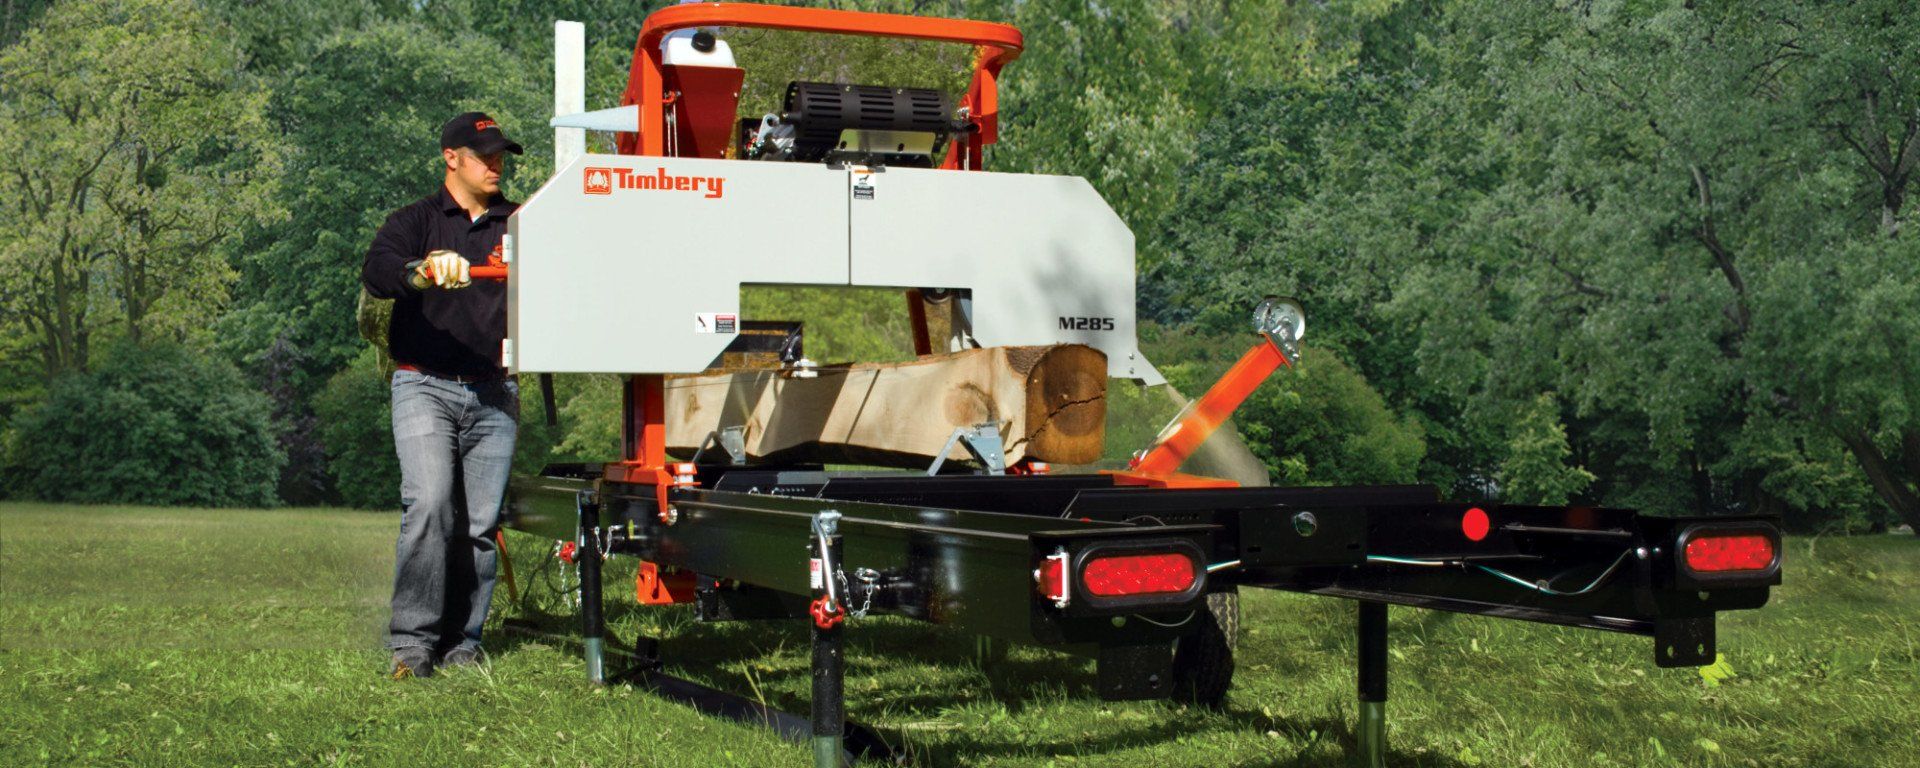 Timbery M285 portable sawmill